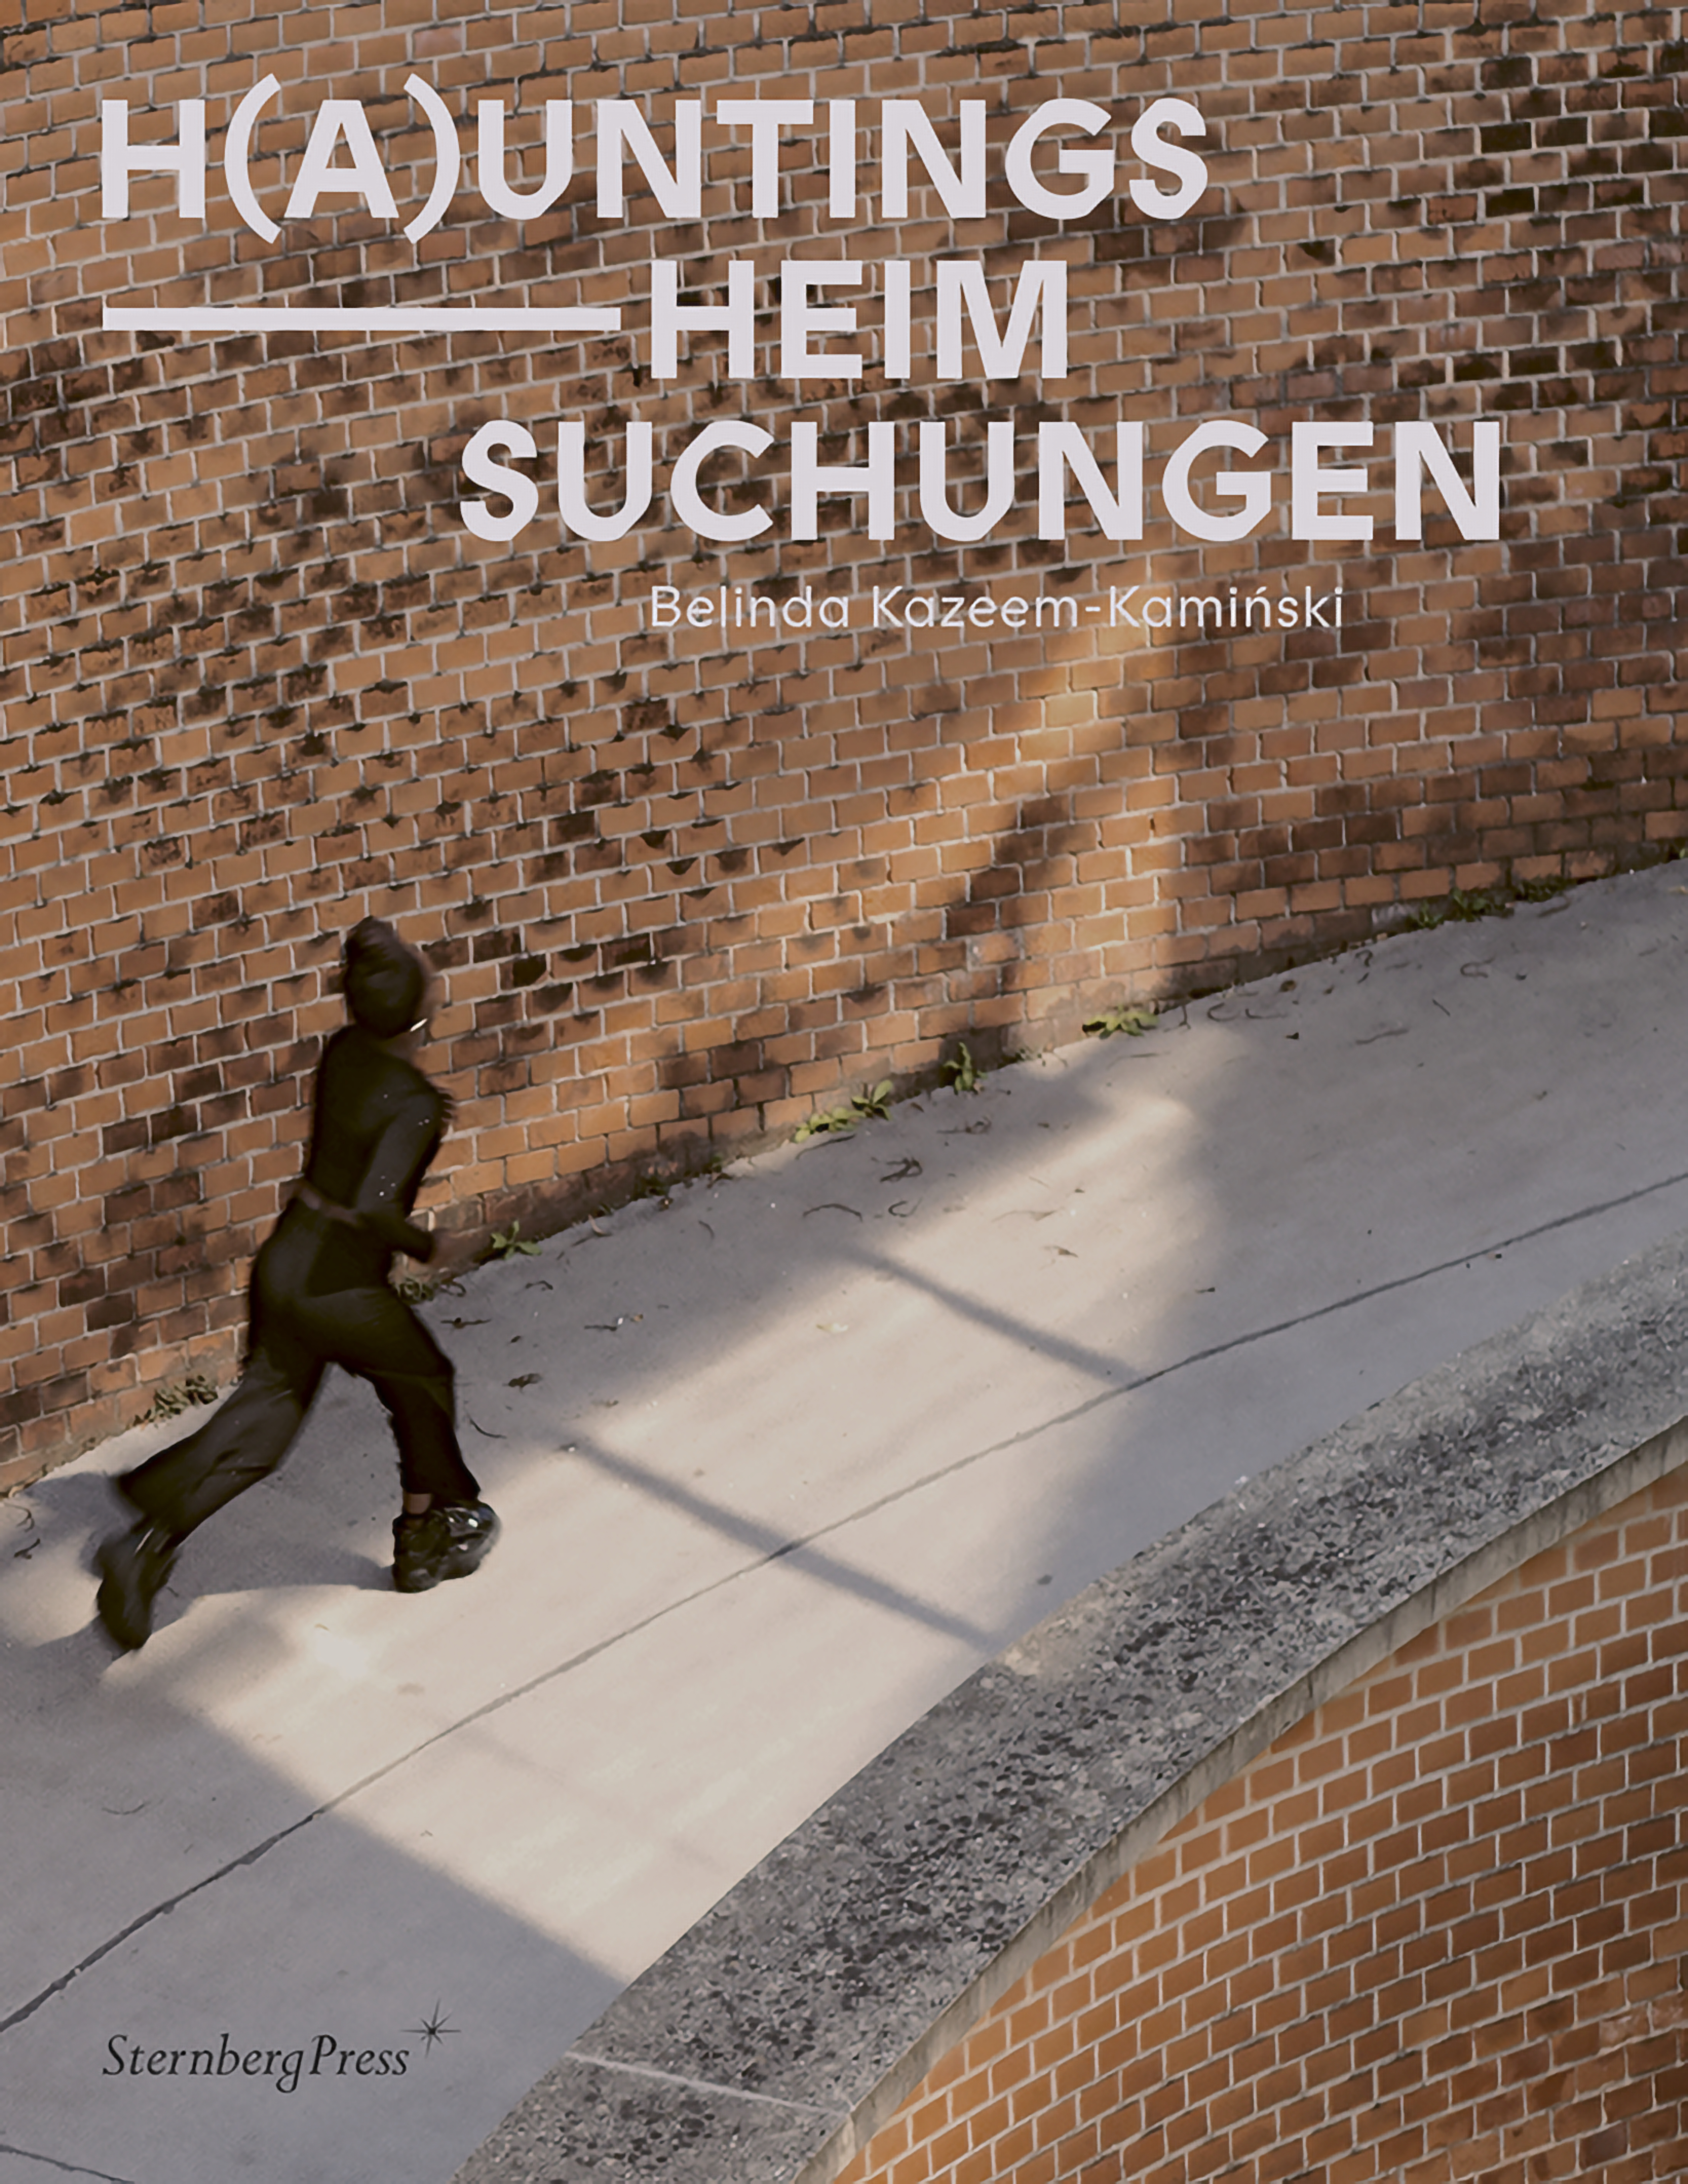 H(a)untings / Heim Suchungen